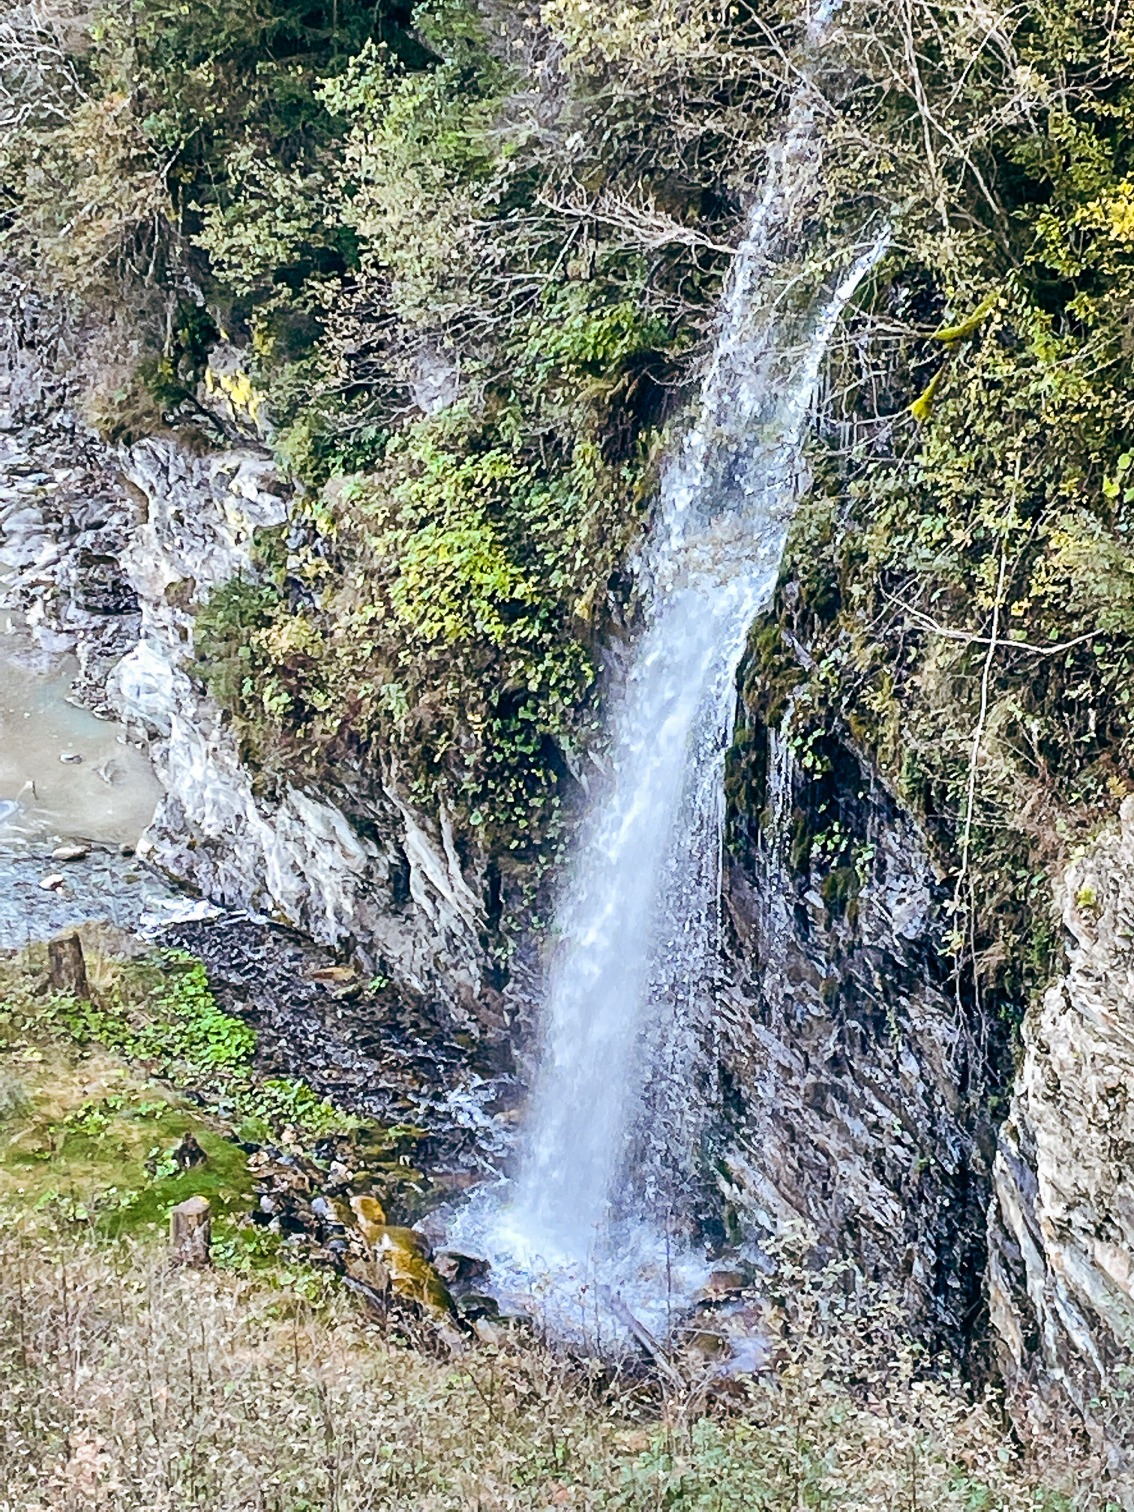 daneben stürzt ein imposanter Wasserfall donnernd in die Tiefe – doch die Natur ist massiv bedroht, wovon Berg- und Naturführer Werner Schuh den großen und kleinen Gästen berichtet.